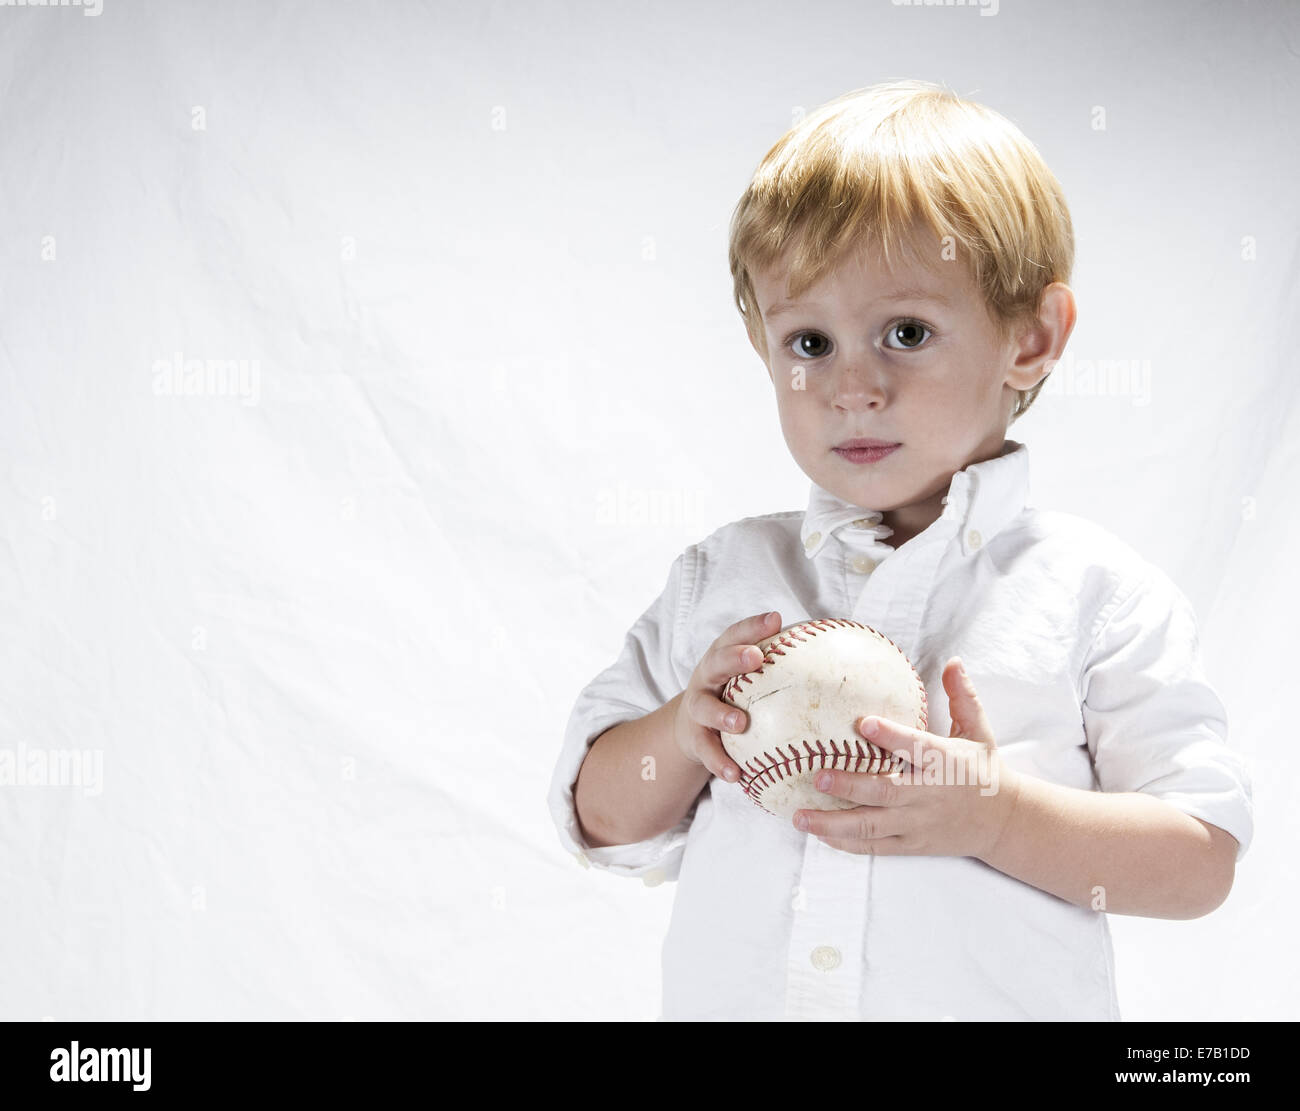 Jeune garçon cheveux blonds dans une chemise blanche tenant une balle molle. Clermont Floride USA Banque D'Images